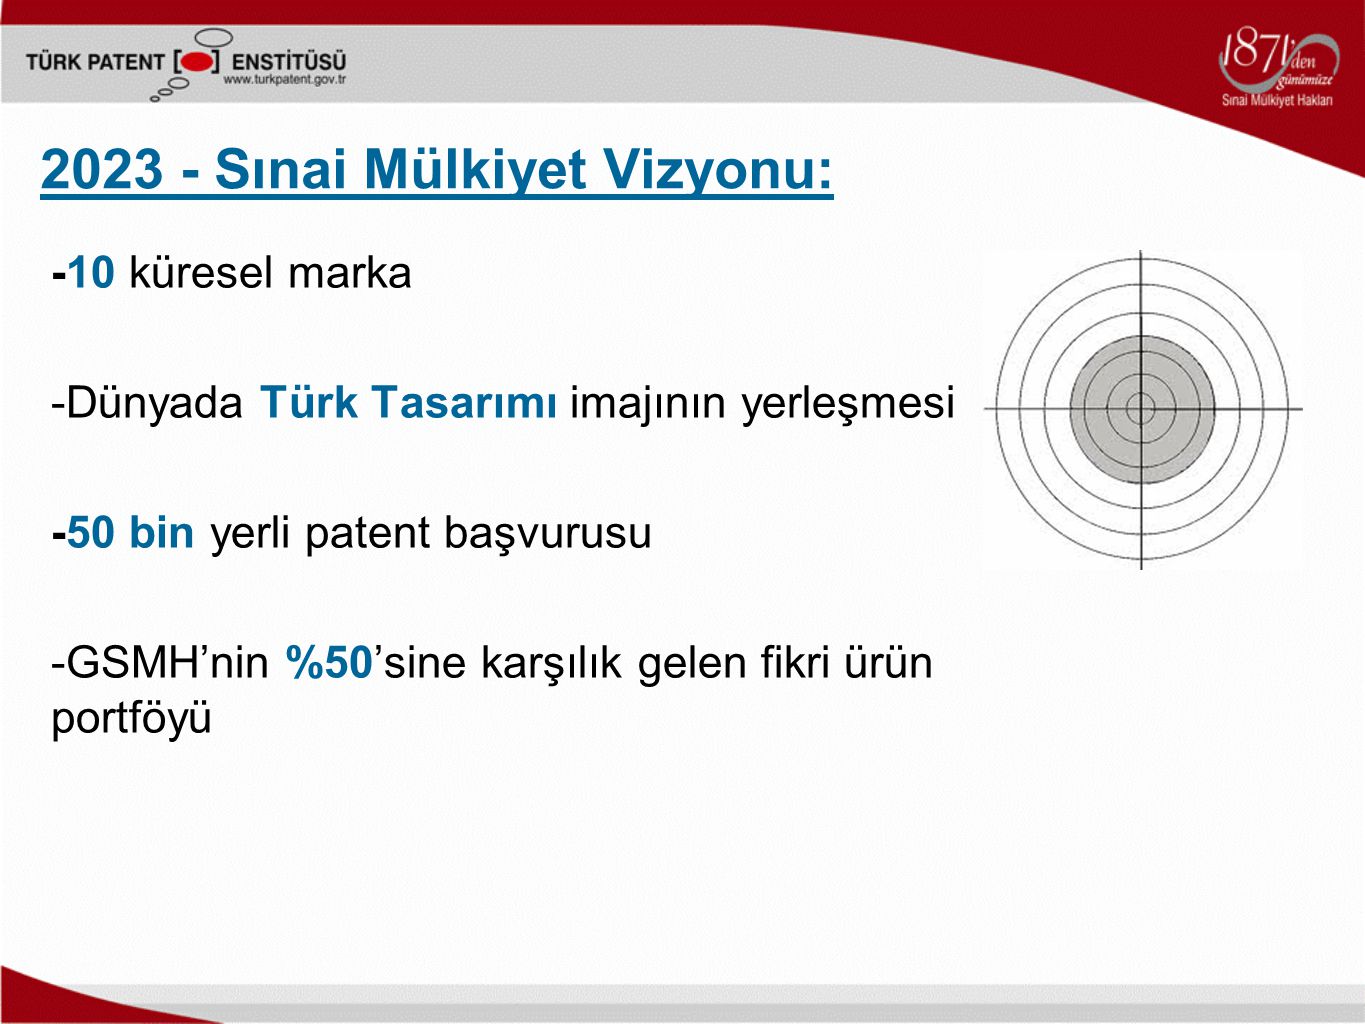 Sınai Mülkiyet Vizyonu: -10 küresel marka -Dünyada Türk Tasarımı imajının yerleşmesi -50 bin yerli patent başvurusu -GSMH’nin %50’sine karşılık gelen fikri ürün portföyü